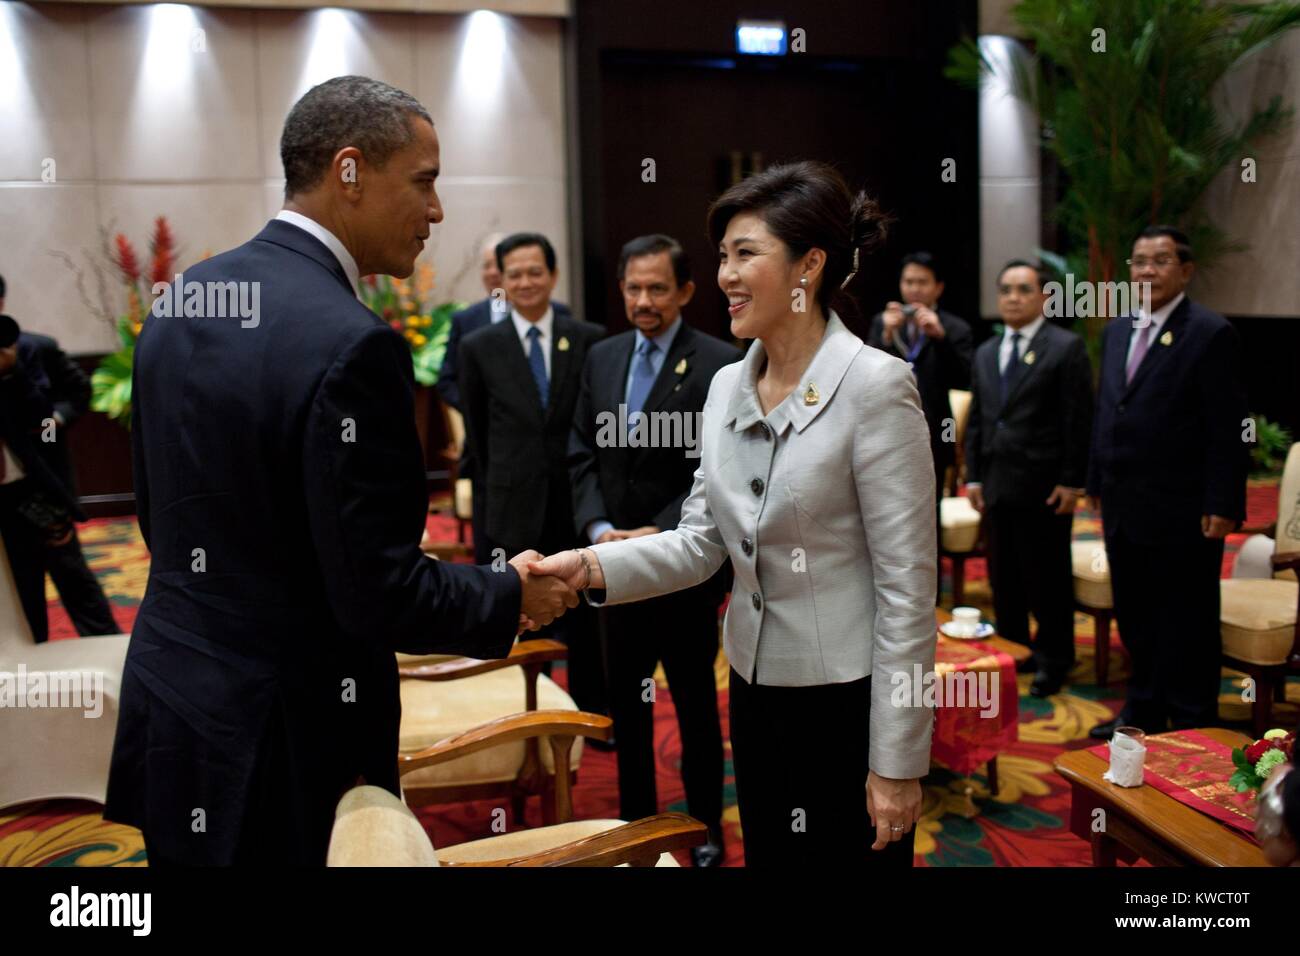 Le président Barack Obama accueille le premier ministre Yingluck Shinawatra de Thaïlande. Au sommet de l'ASEAN à Nusa Dua, Bali, Indonésie, le 18 novembre 2011. (BSLOC 2015 3 143) Banque D'Images